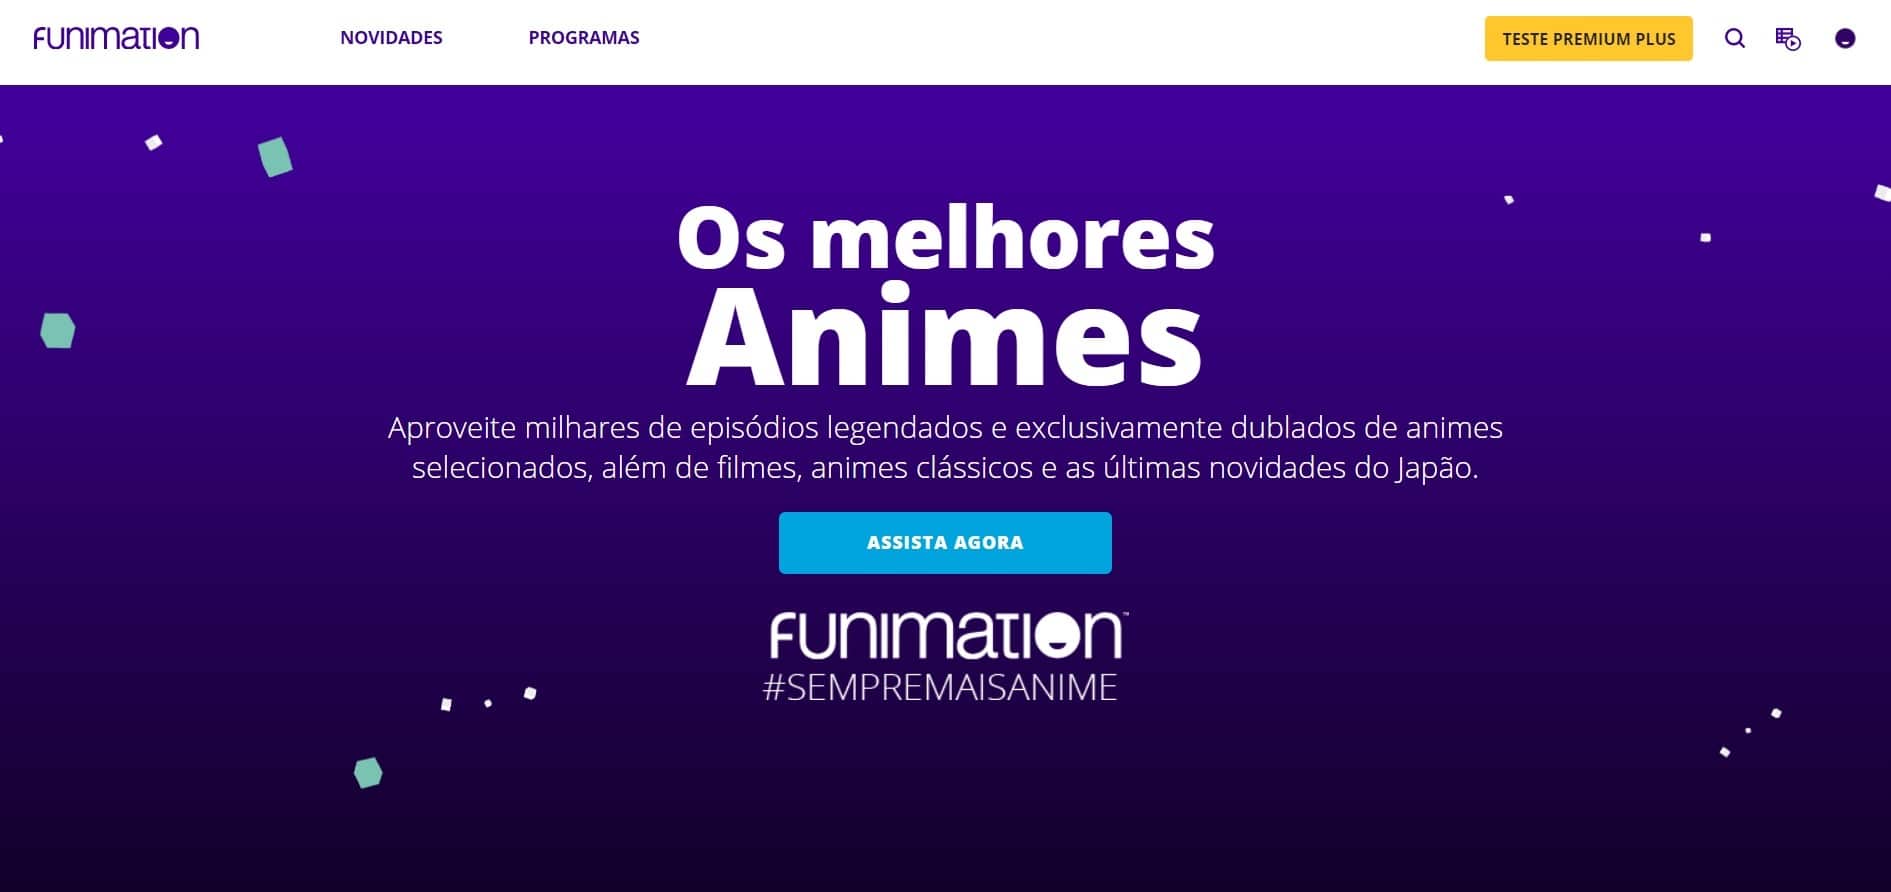 Onde assistir animes de maneira legal no streaming - Olhar Digital